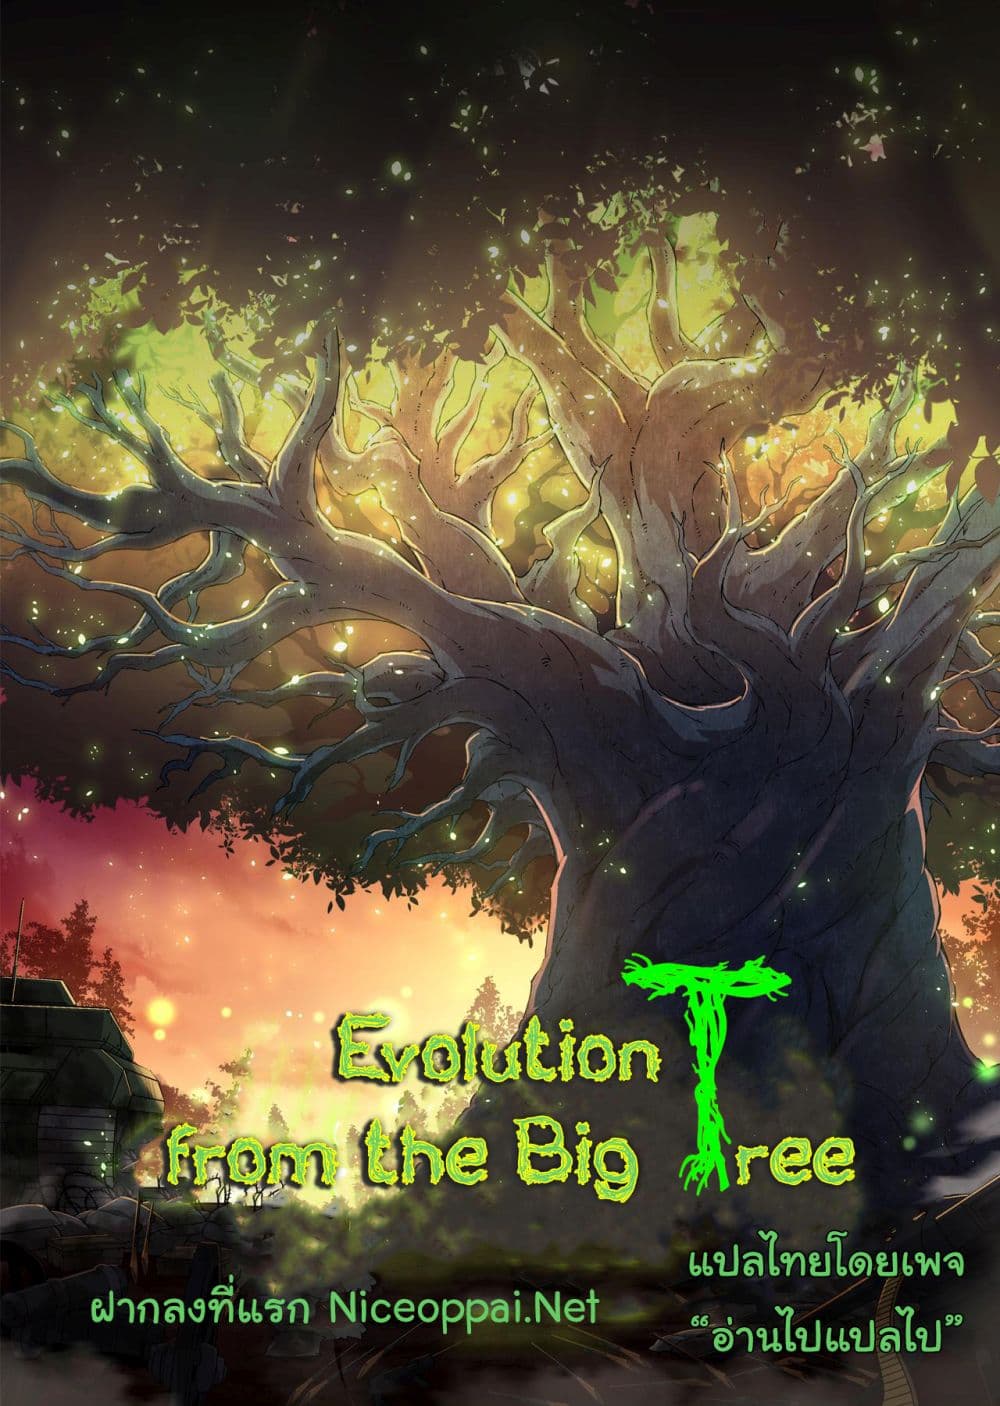 Evolution from the Big Tree Ã Â¸â€¢Ã Â¸Â­Ã Â¸â„¢Ã Â¸â€”Ã Â¸ÂµÃ Â¹Ë† 21 (53)